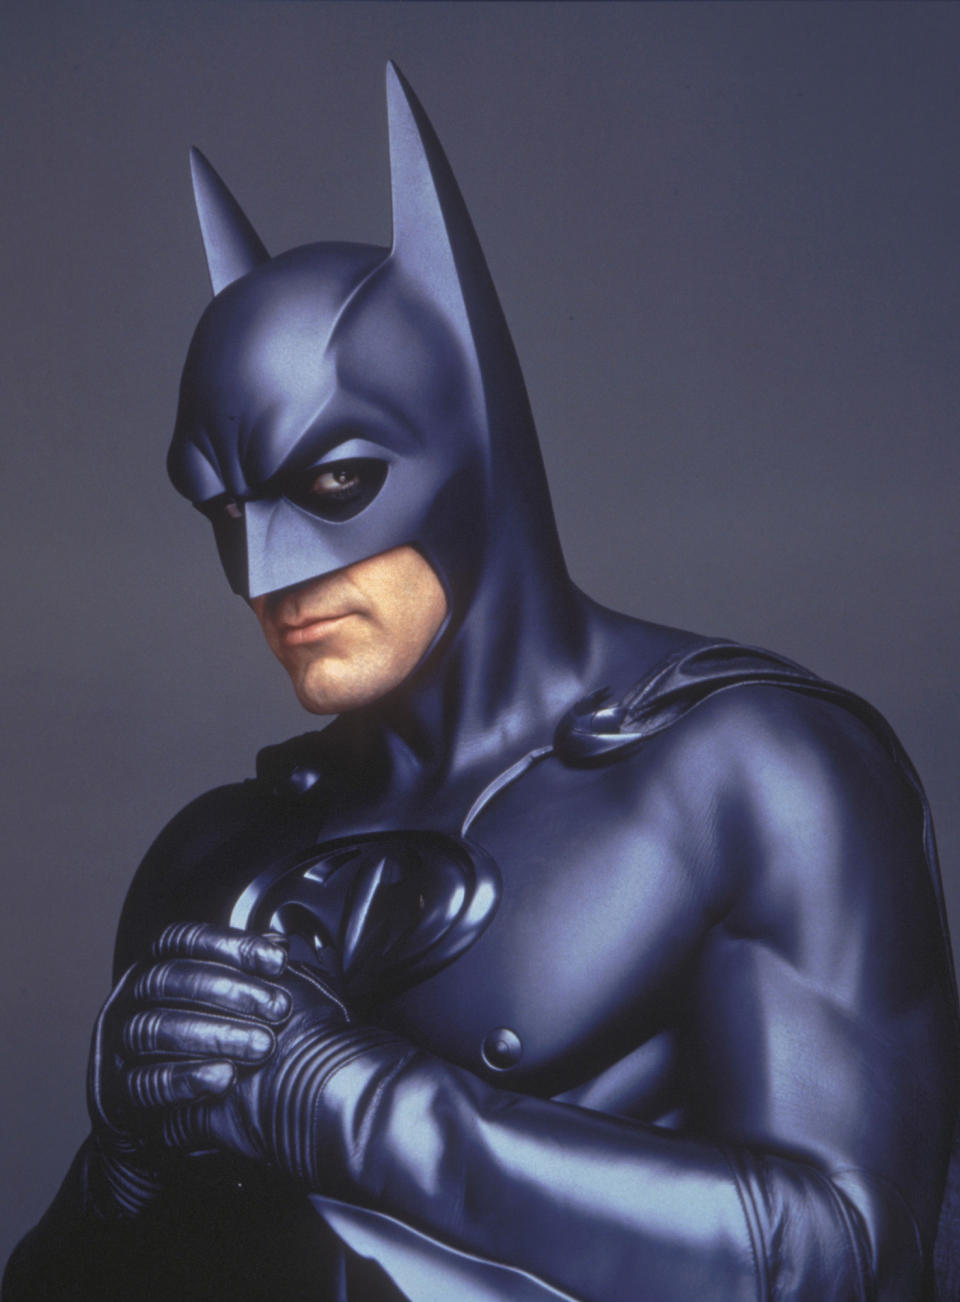 Die Brustwarzen am Batsuit sorgten für Empörung und Spott bei „Batman“-Fans. (Bild: ddp/interTOPICS/Picturelux)